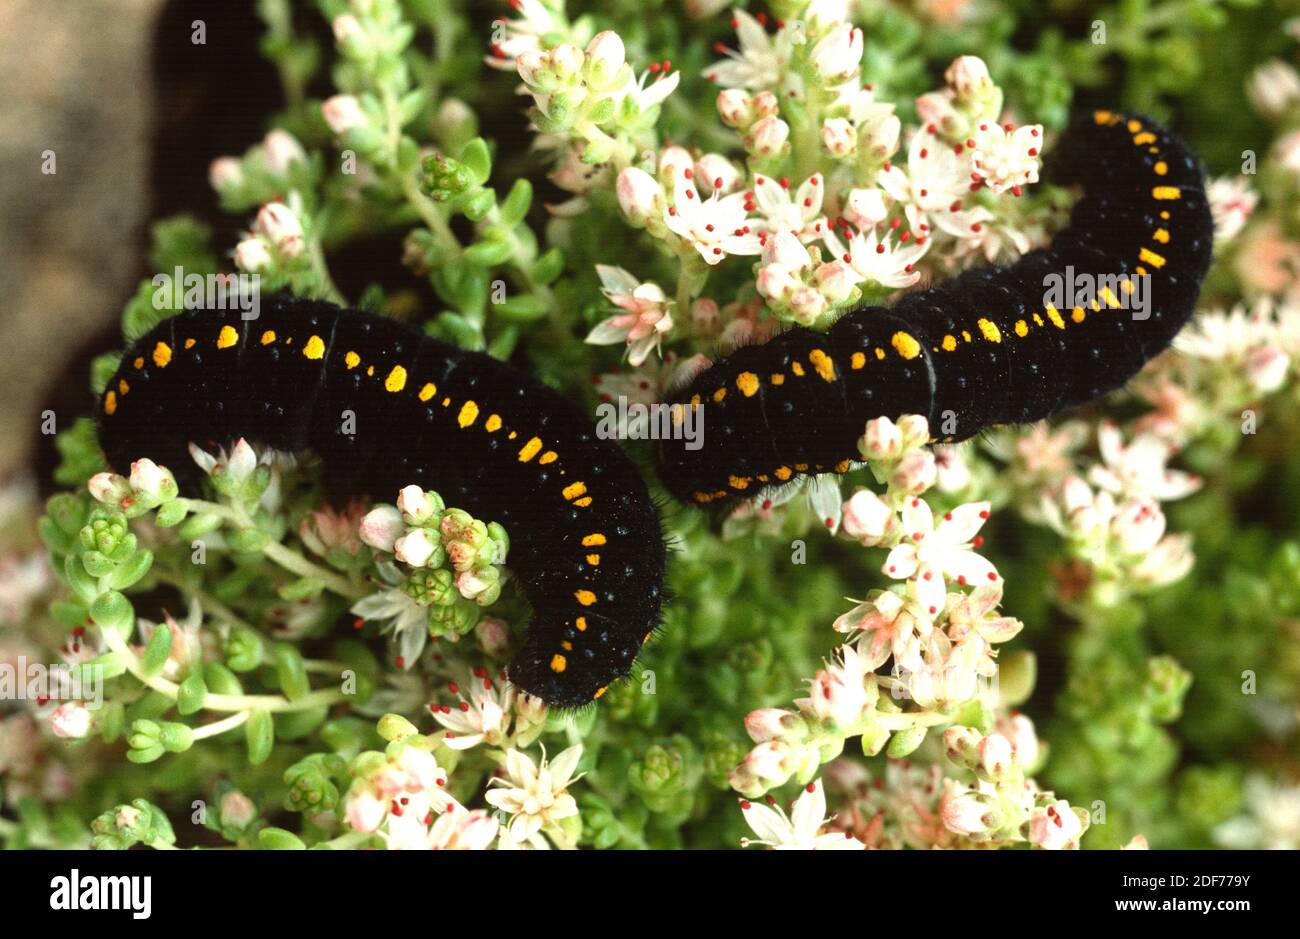 Der Berg Apollo (Parnassius apollo) ist ein Schmetterling, der in den europäischen Bergen beheimatet ist. Caterpillar auf einer Futterpflanze (Sedum sp. ). Stockfoto